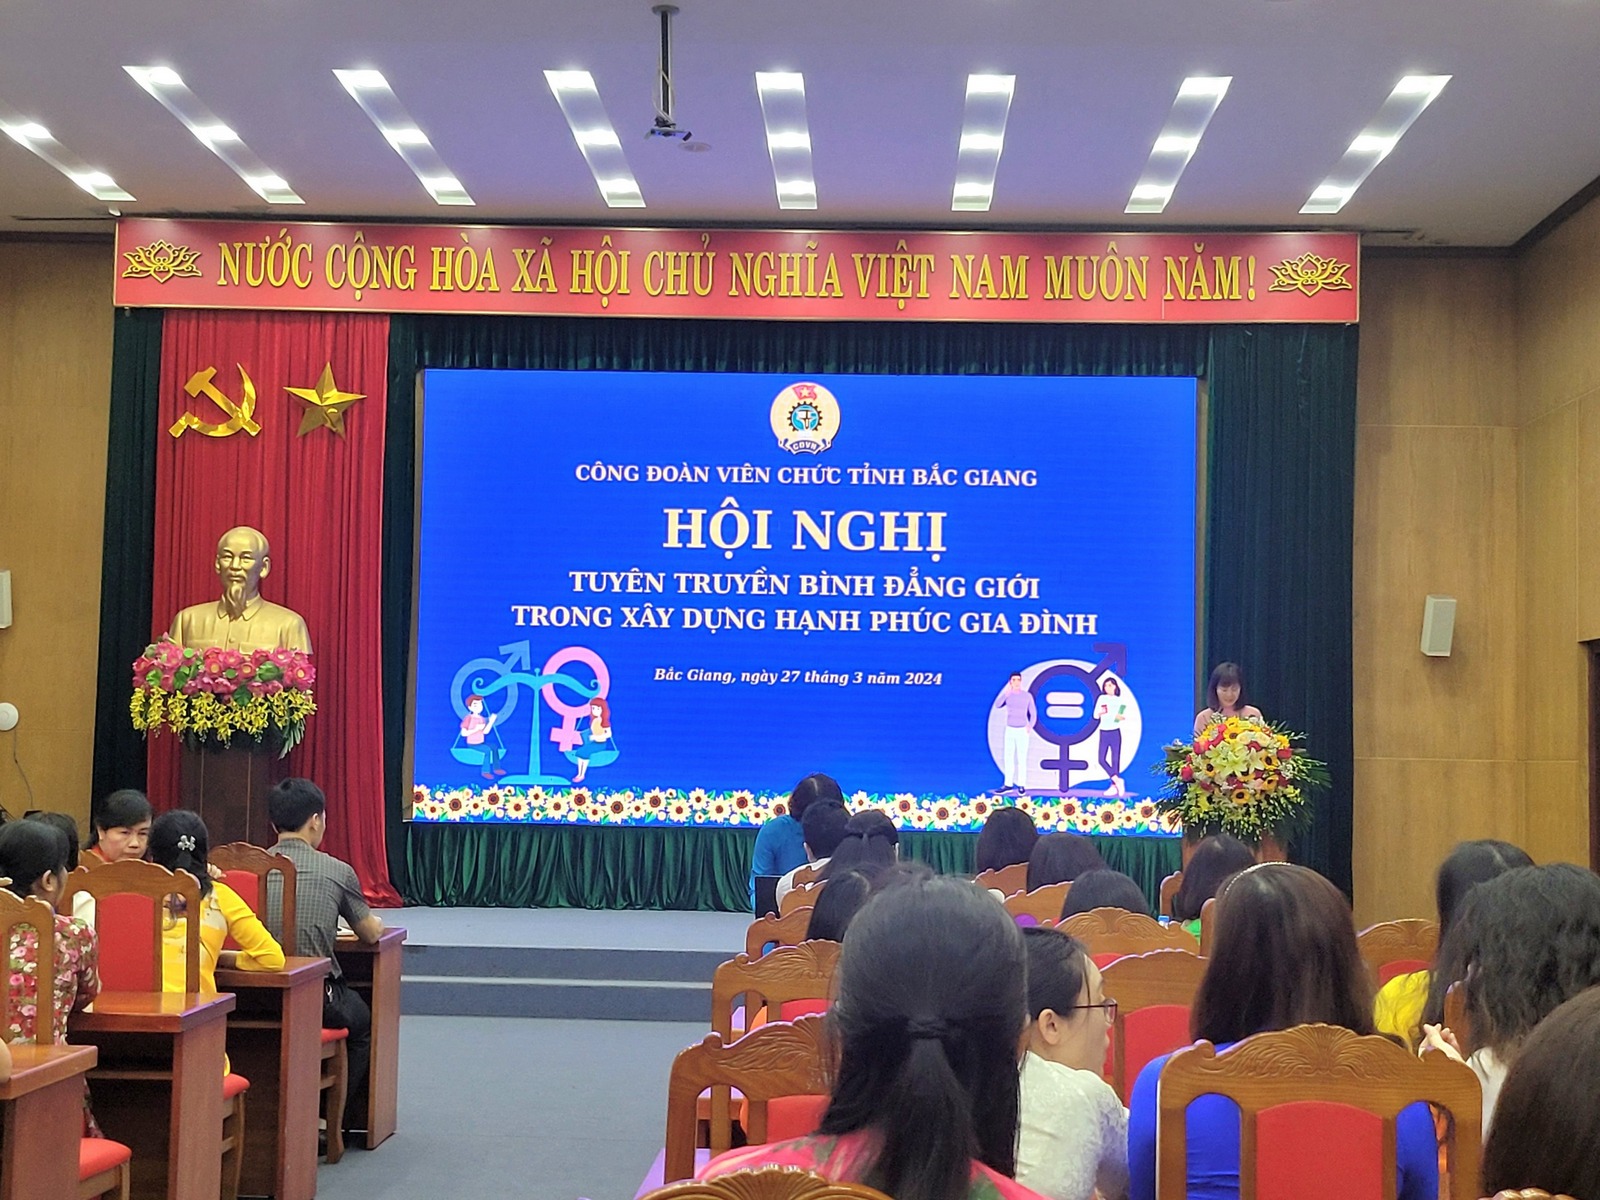 Công đoàn Viên chức tỉnh Bắc Giang: tuyên truyền Bình đẳng giới trong xây dựng hạnh phúc gia đình